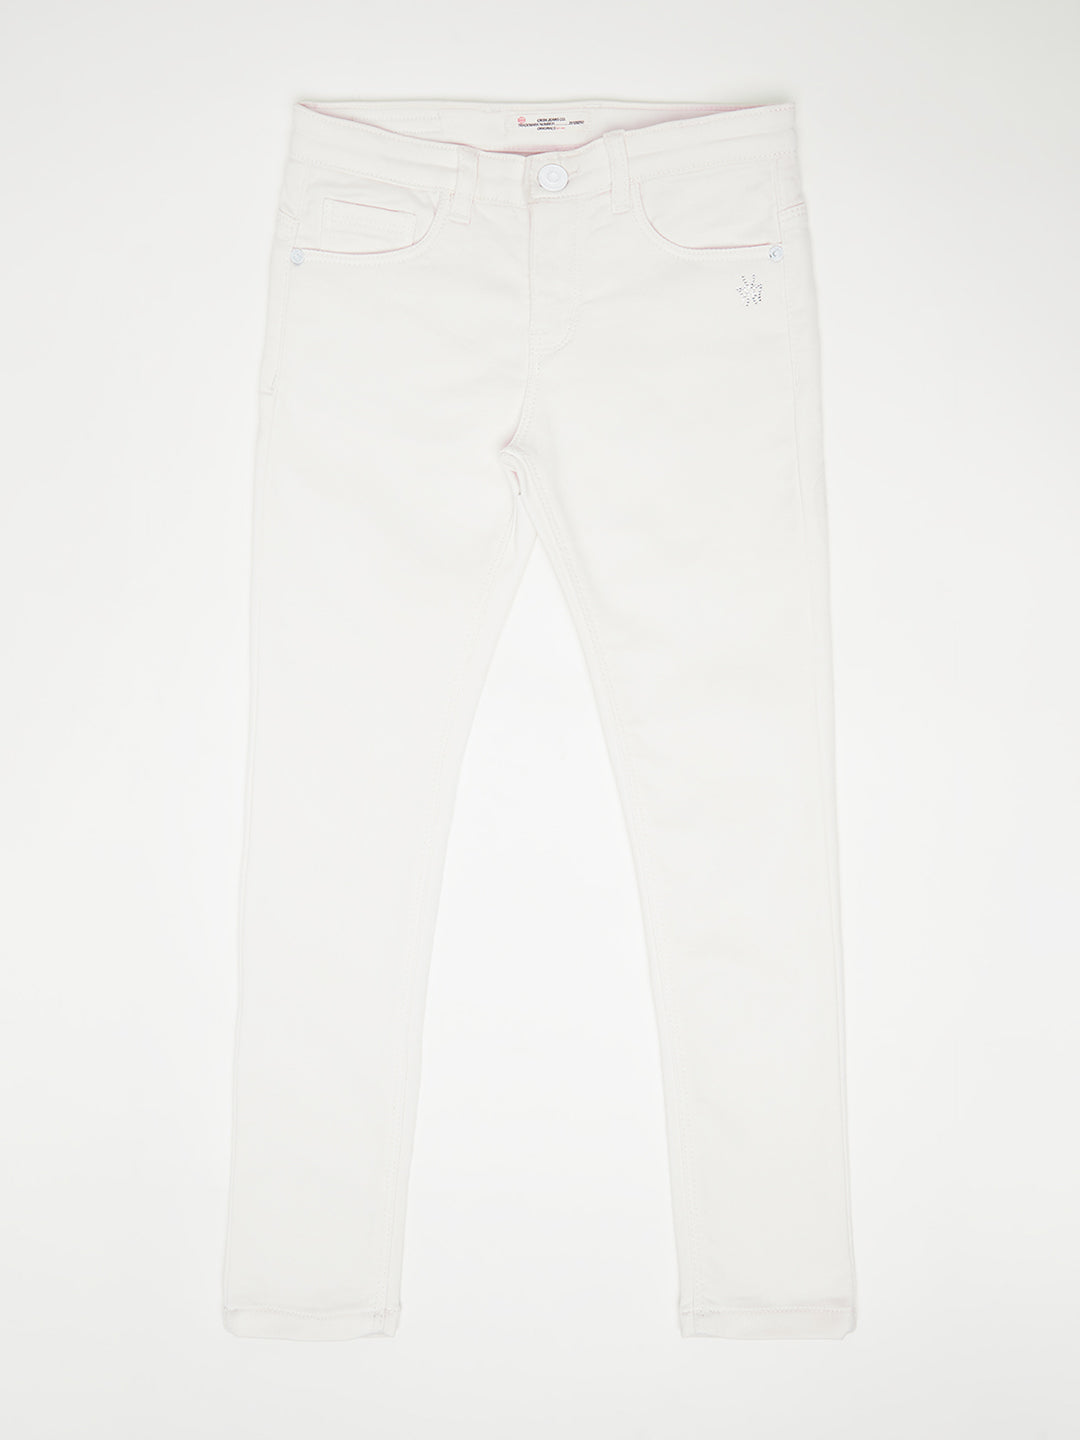 White Denim Jeans - Girls Jeans